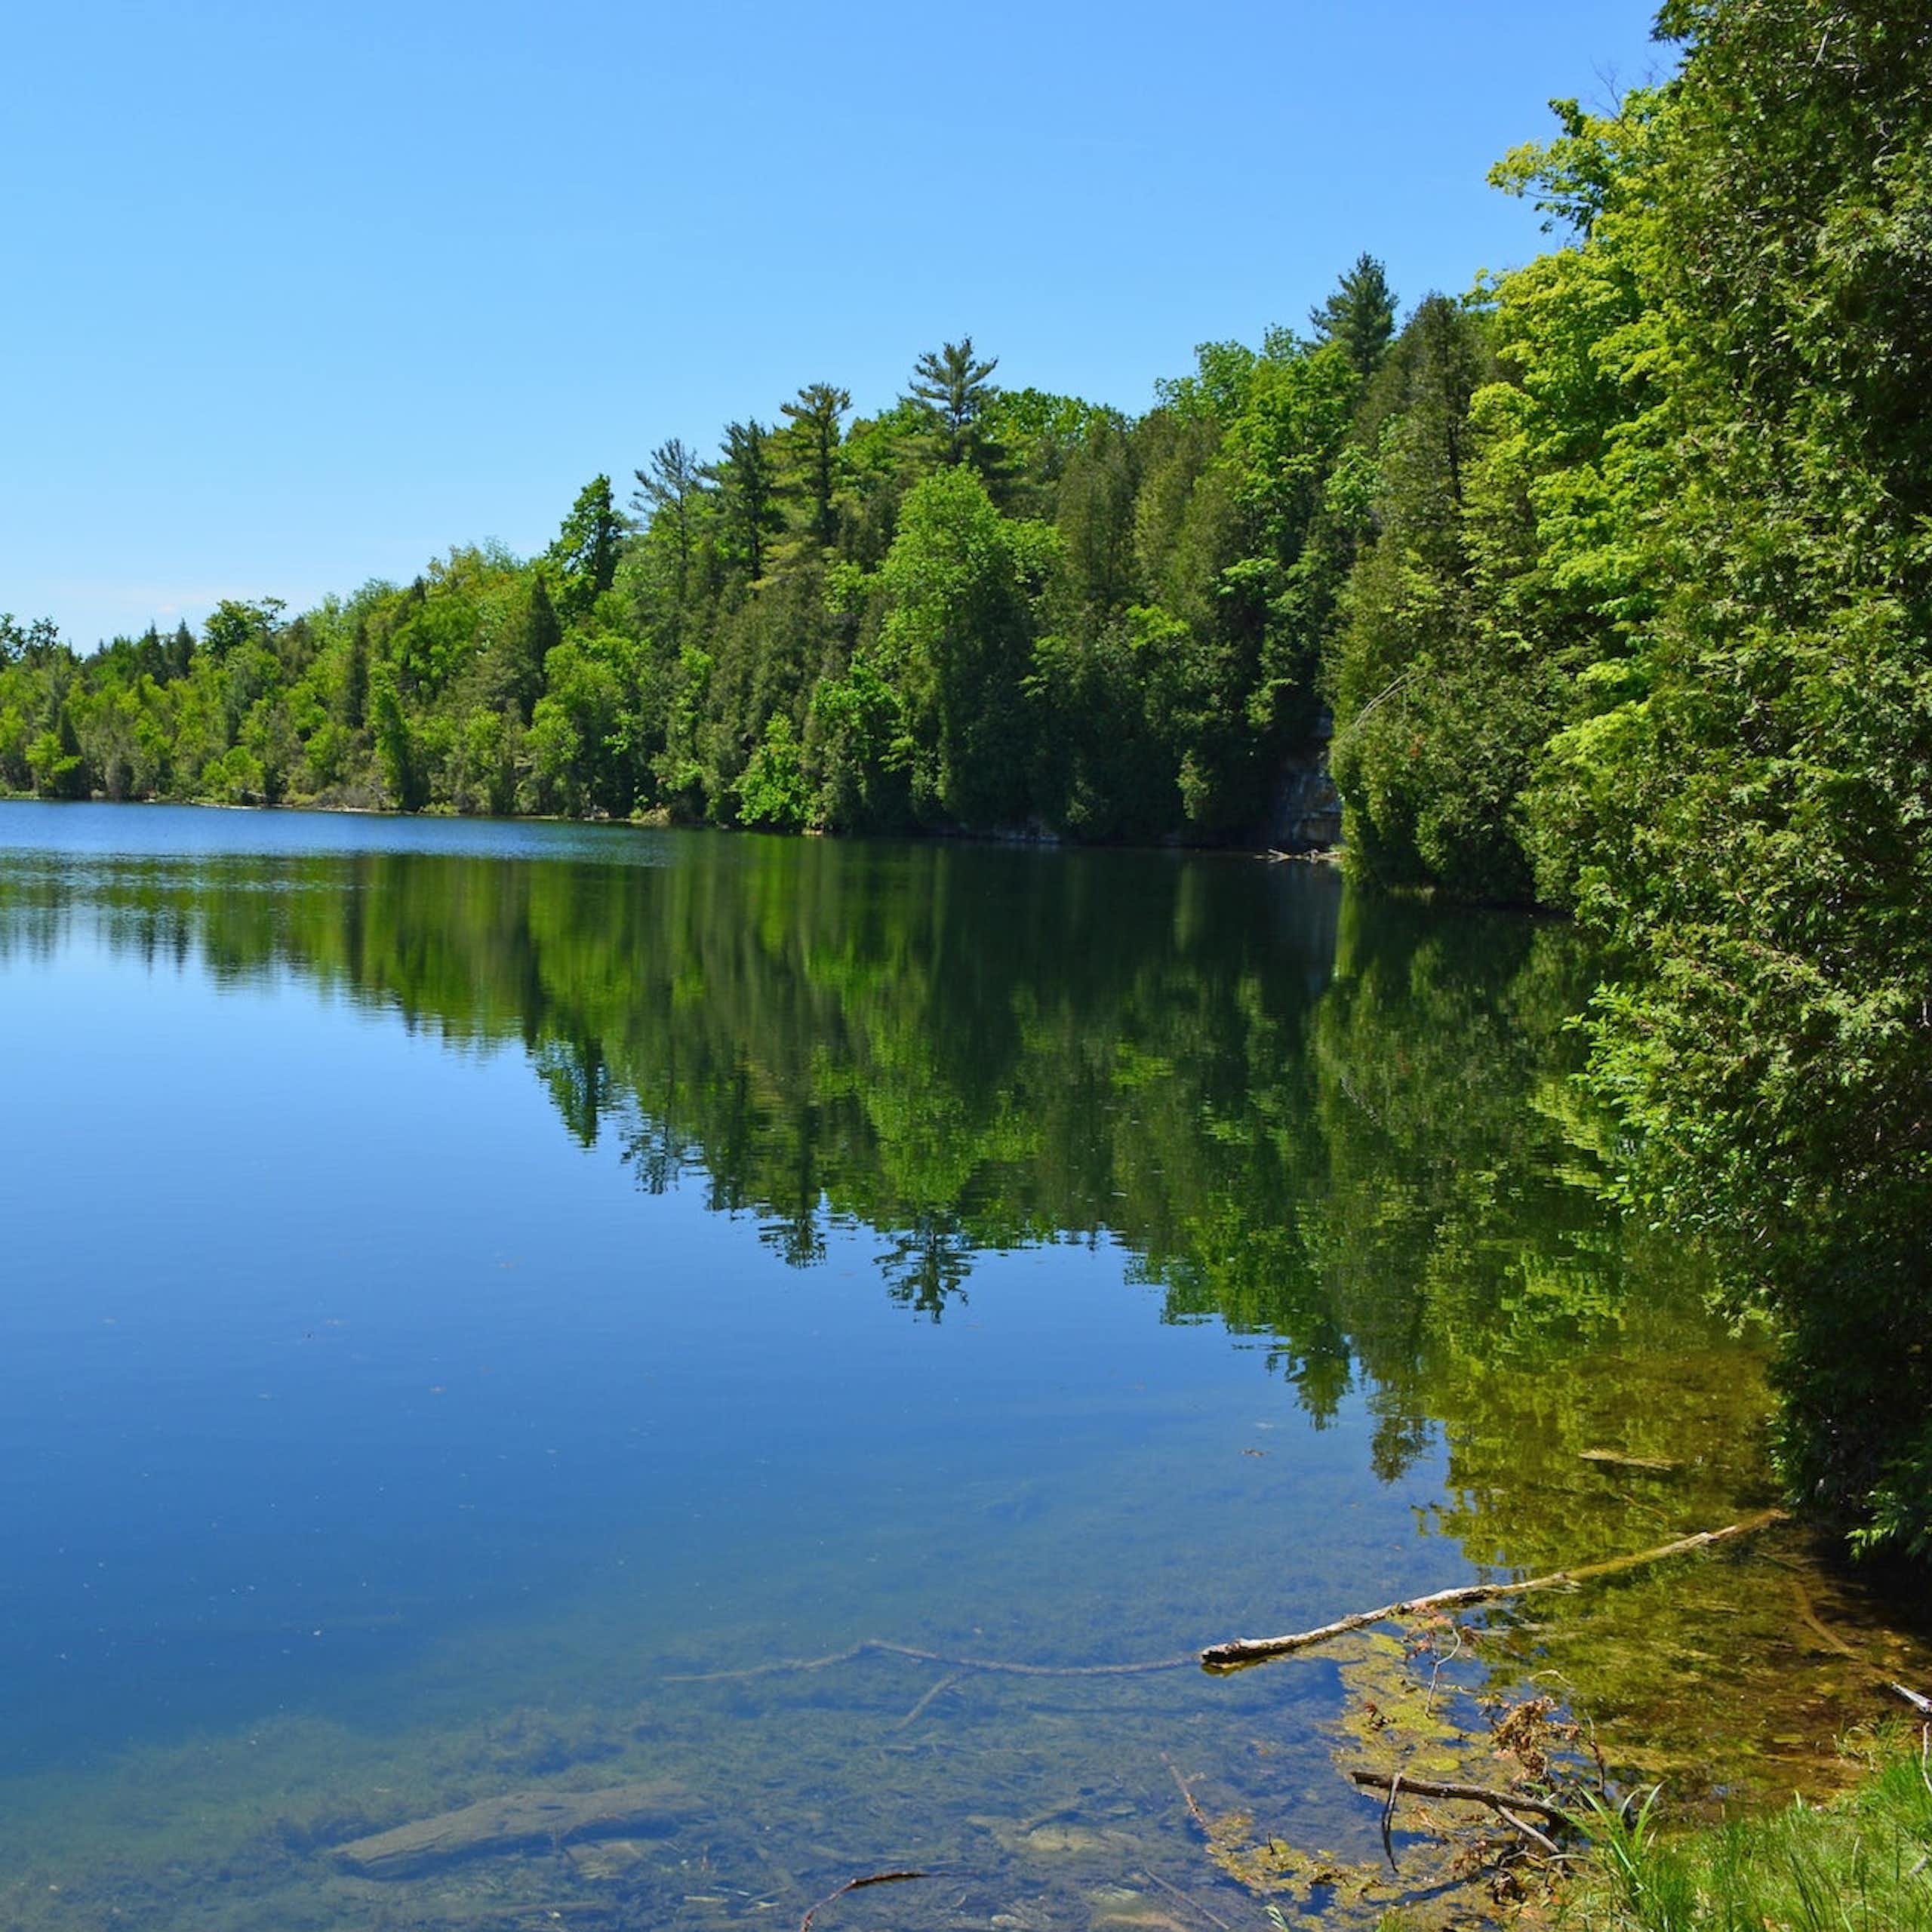 Voici comment le lac Crawford, en Ontario, a été choisi pour marquer le début de l’anthropocène